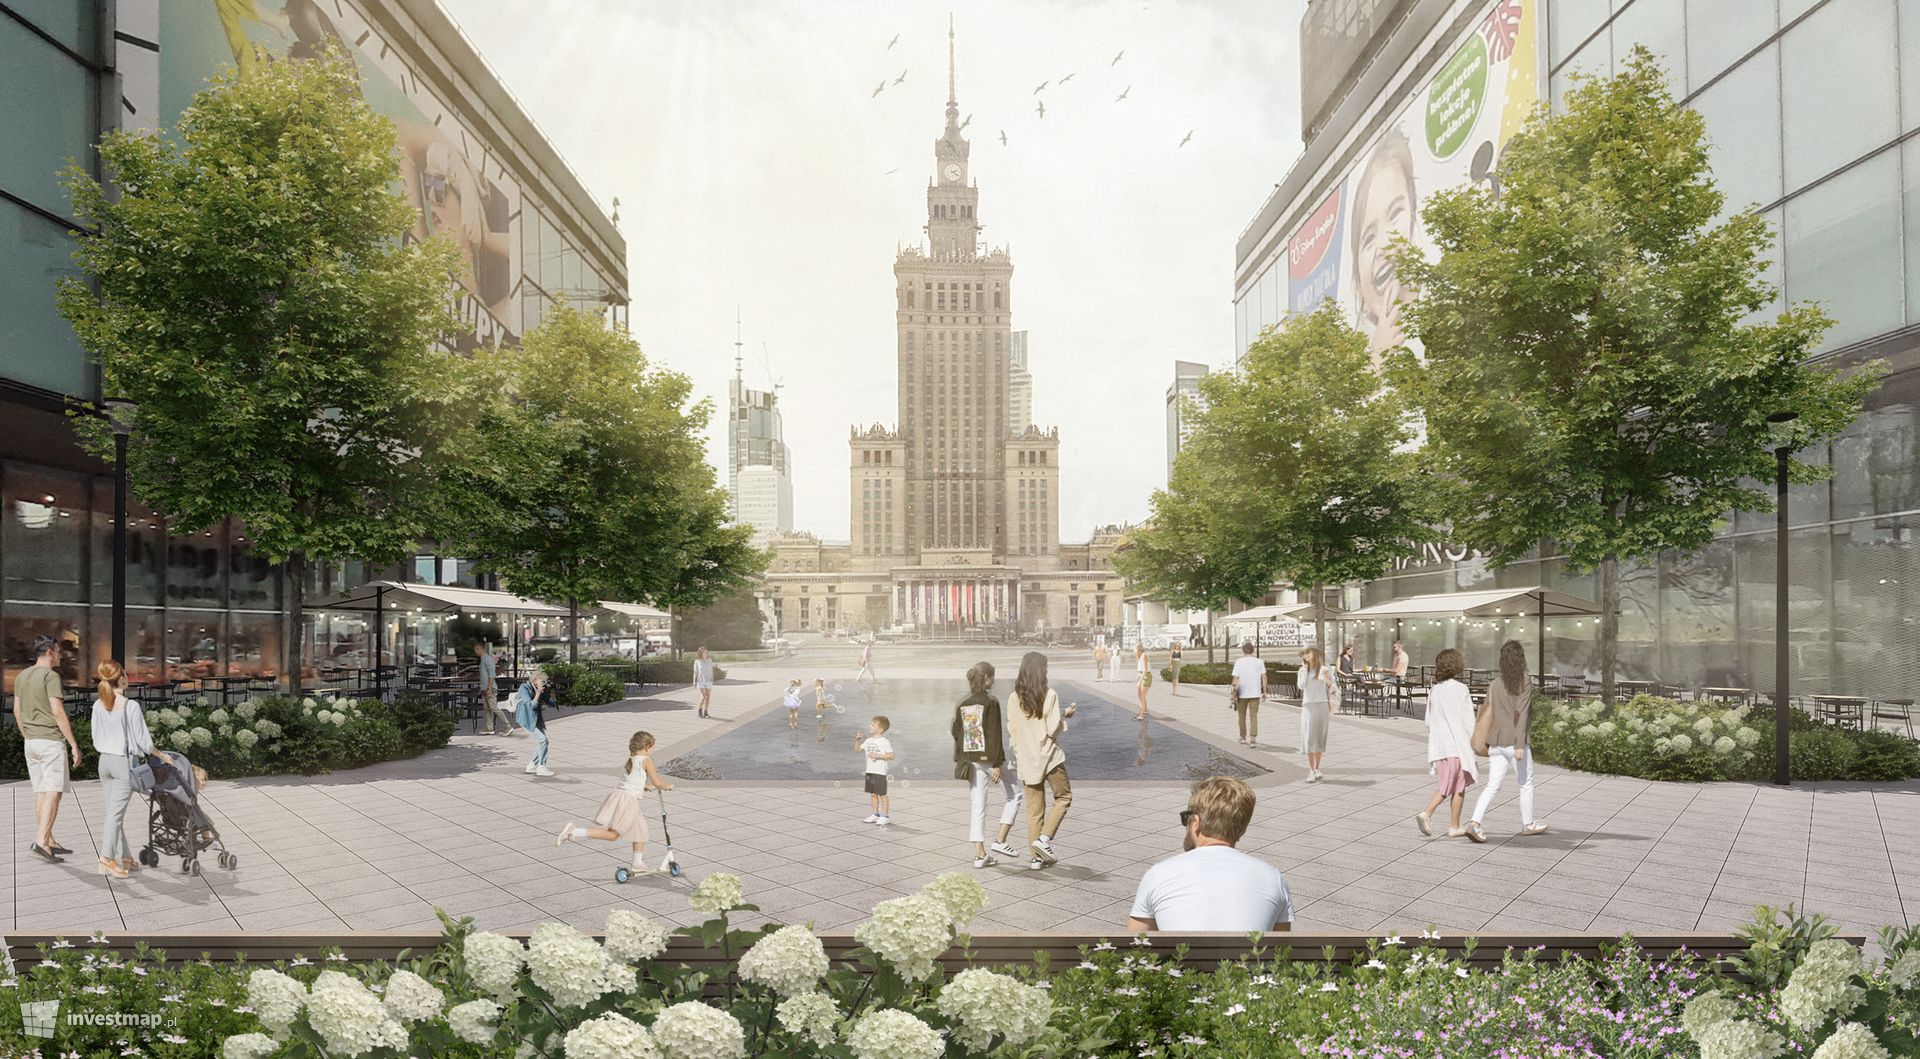 Ogłoszono przetarg na rewitalizację i przebudowę rejonu ulic Złotej i Zgody w Warszawie 